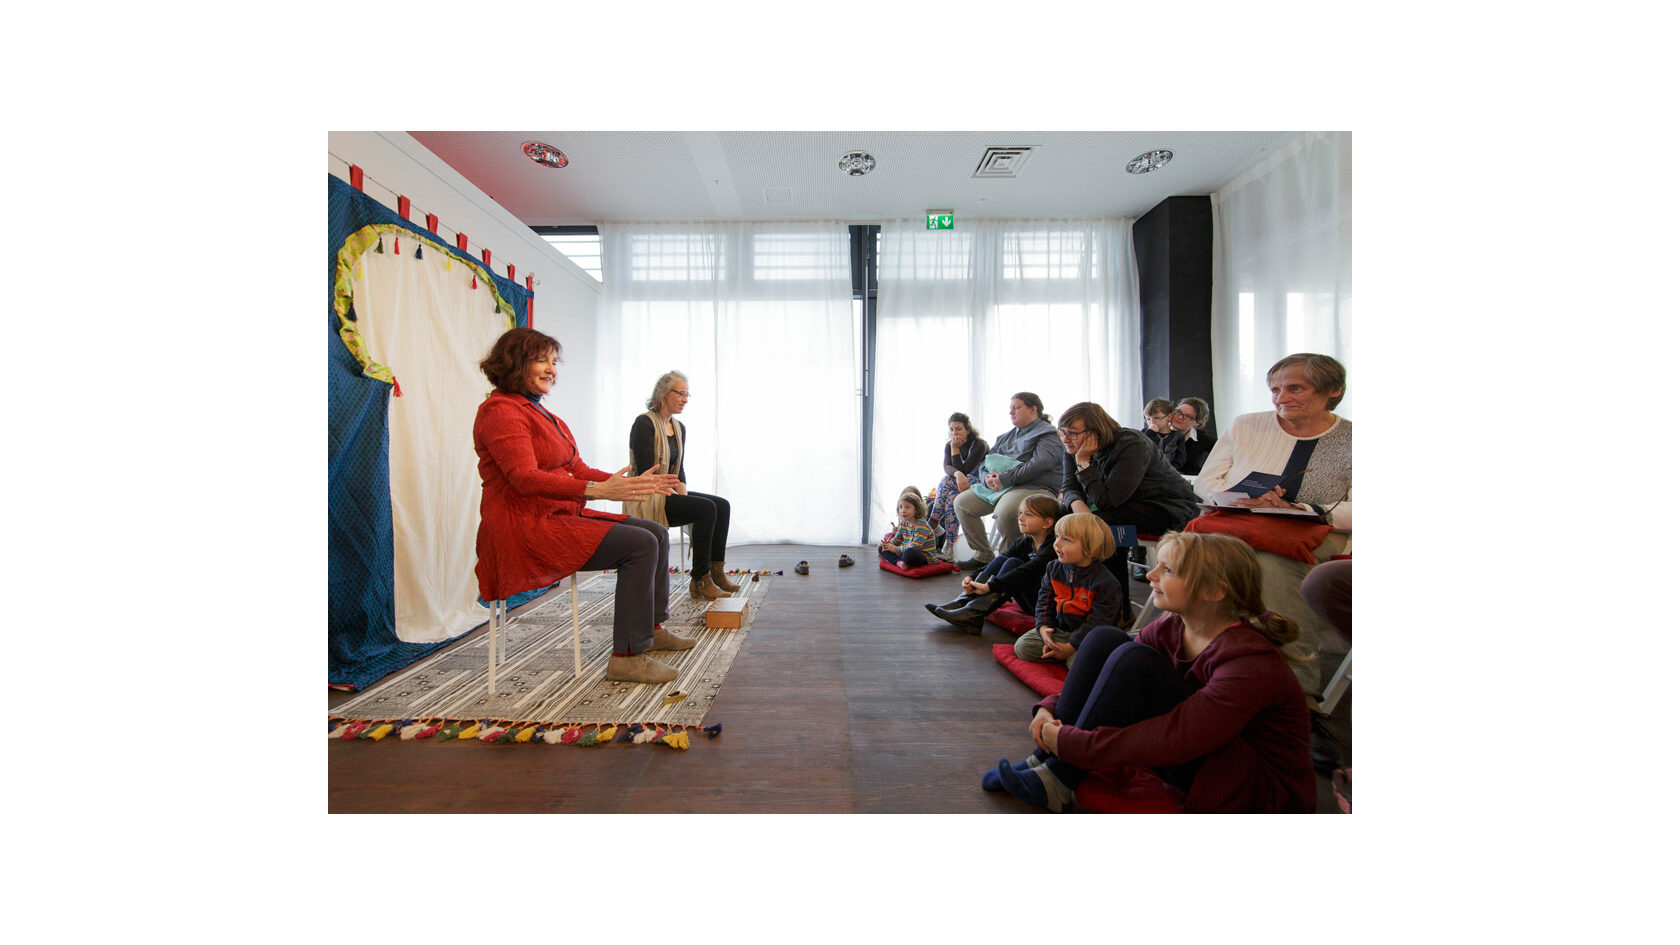 Brit Magdon vom Verein Erzählraum e. V. sitzt auf einem ausgerollten Teppich in einem Raum und erzählt vor Kindern und Erwachsenen, die ihr zuhören.